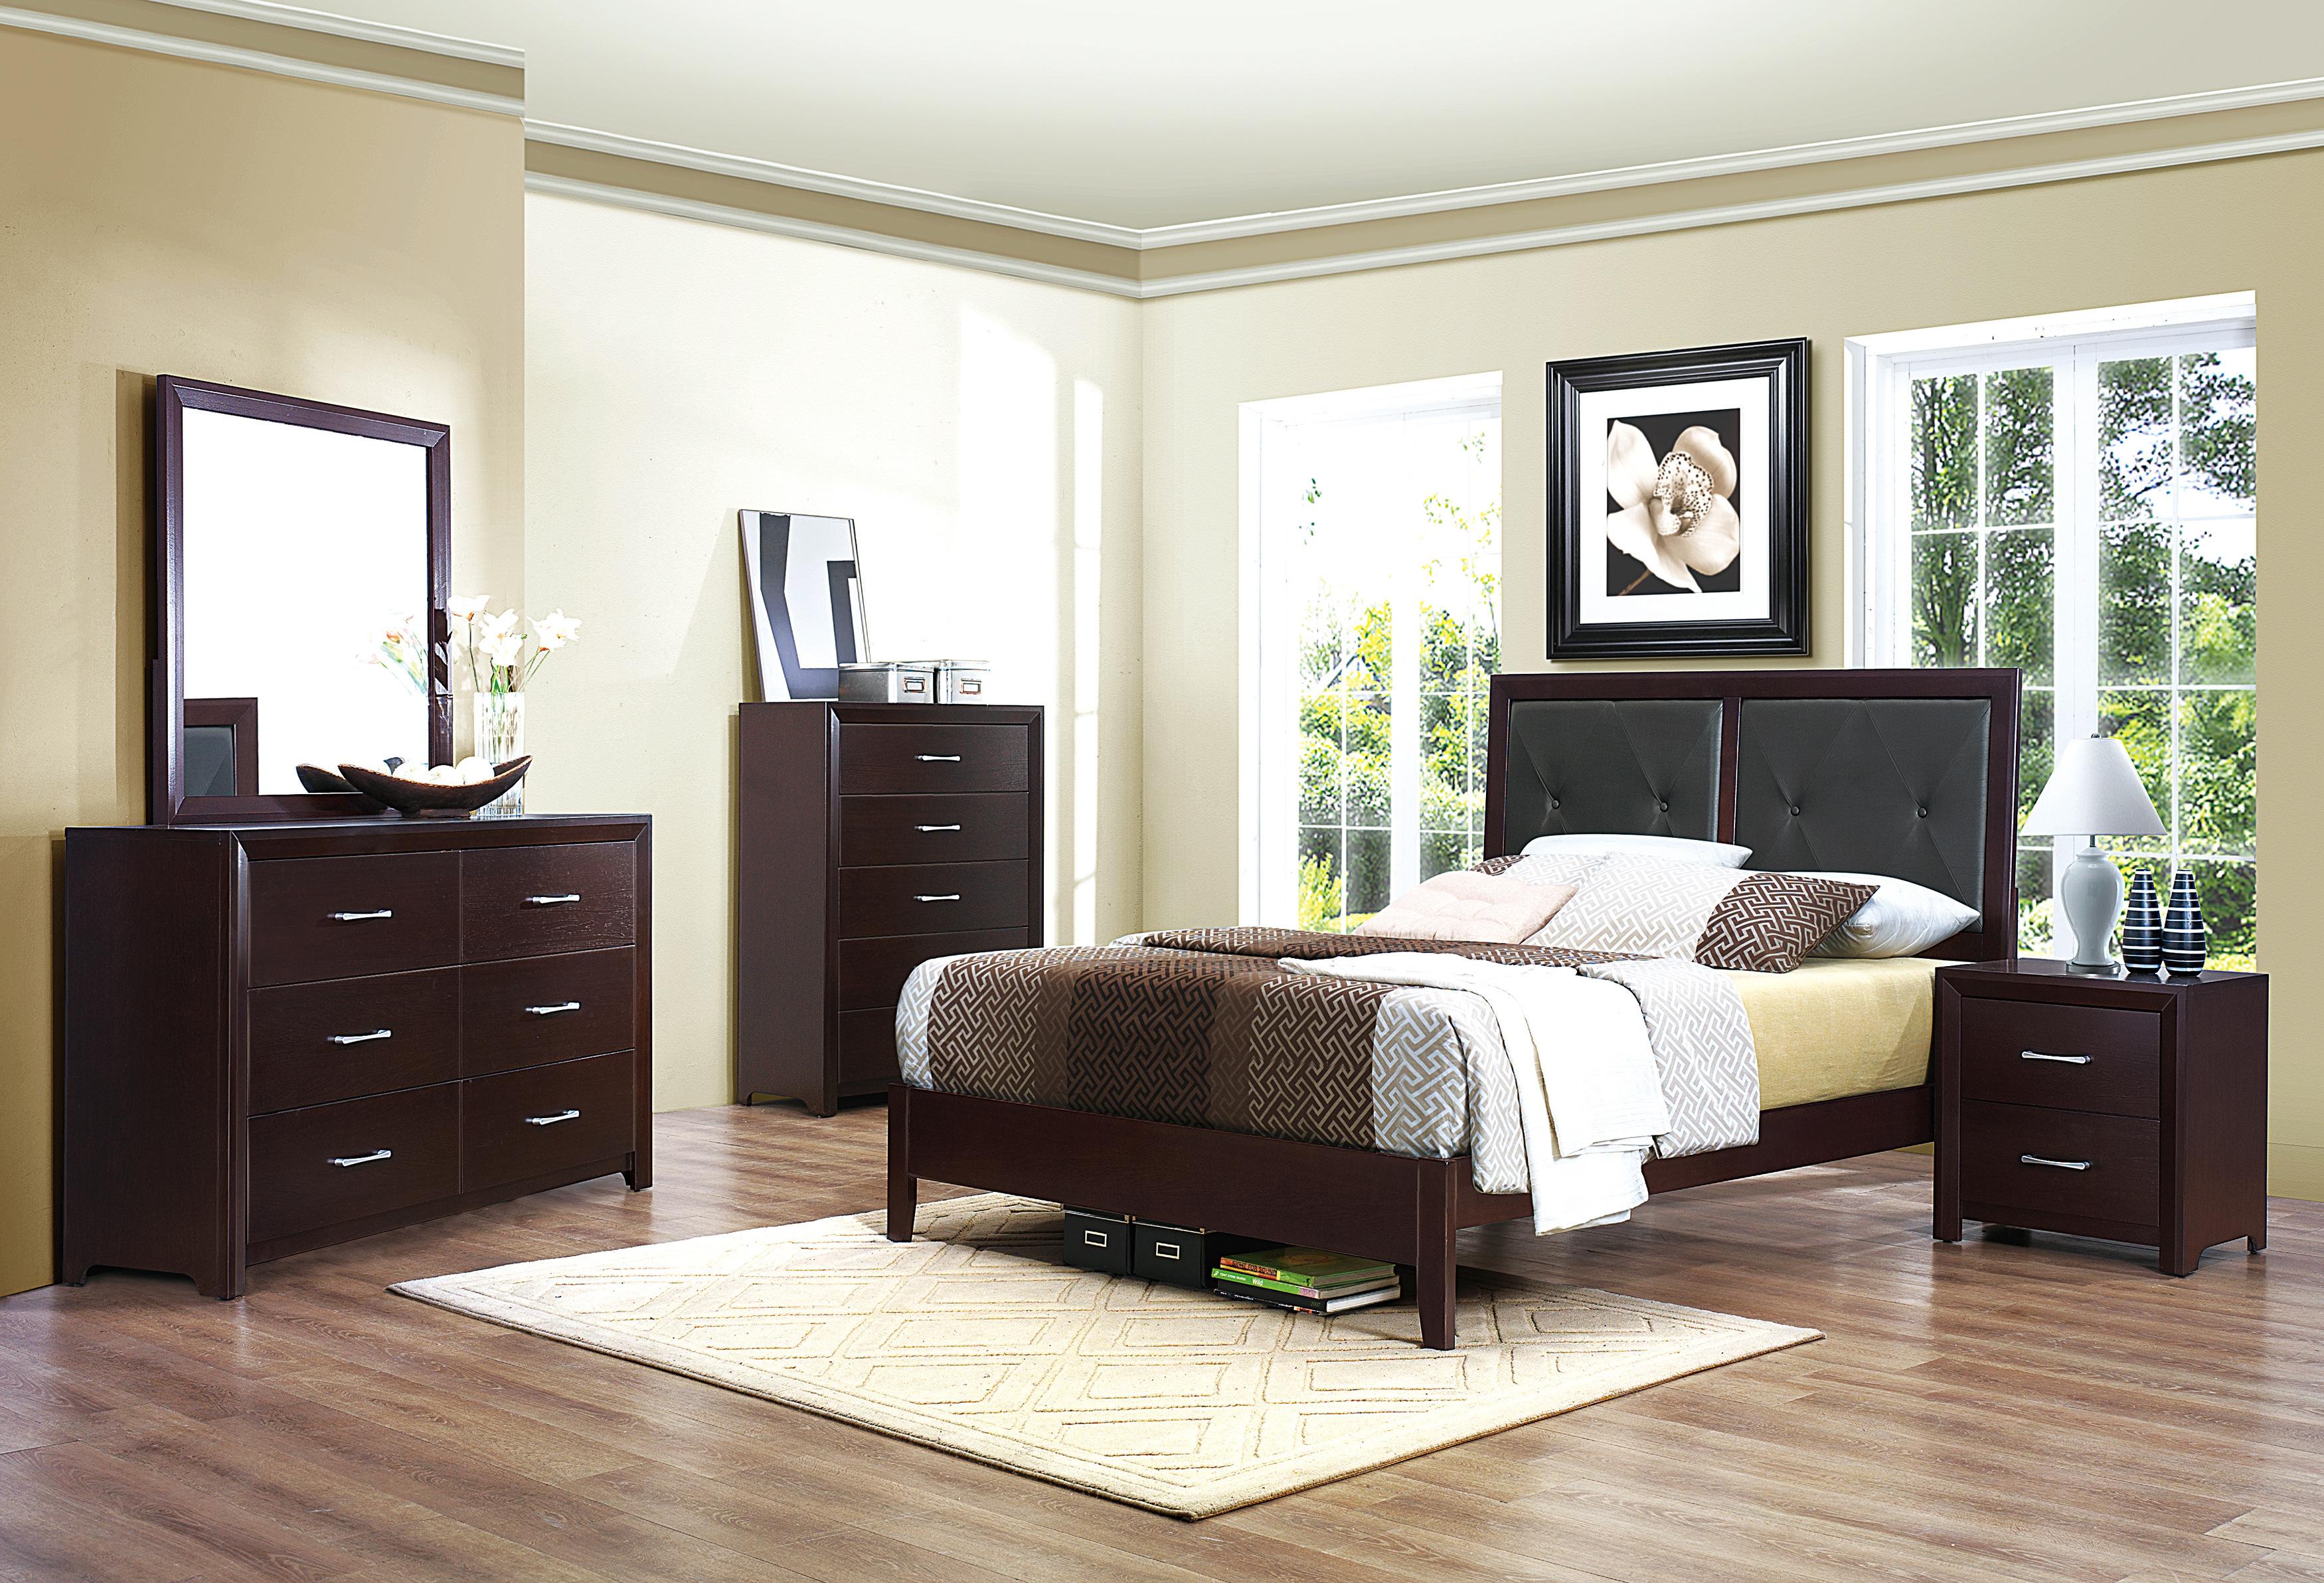 

    
Contemporary Espresso Wood CAL Bedroom Set 6pcs Homelegance 2145K-1CK* Edina
